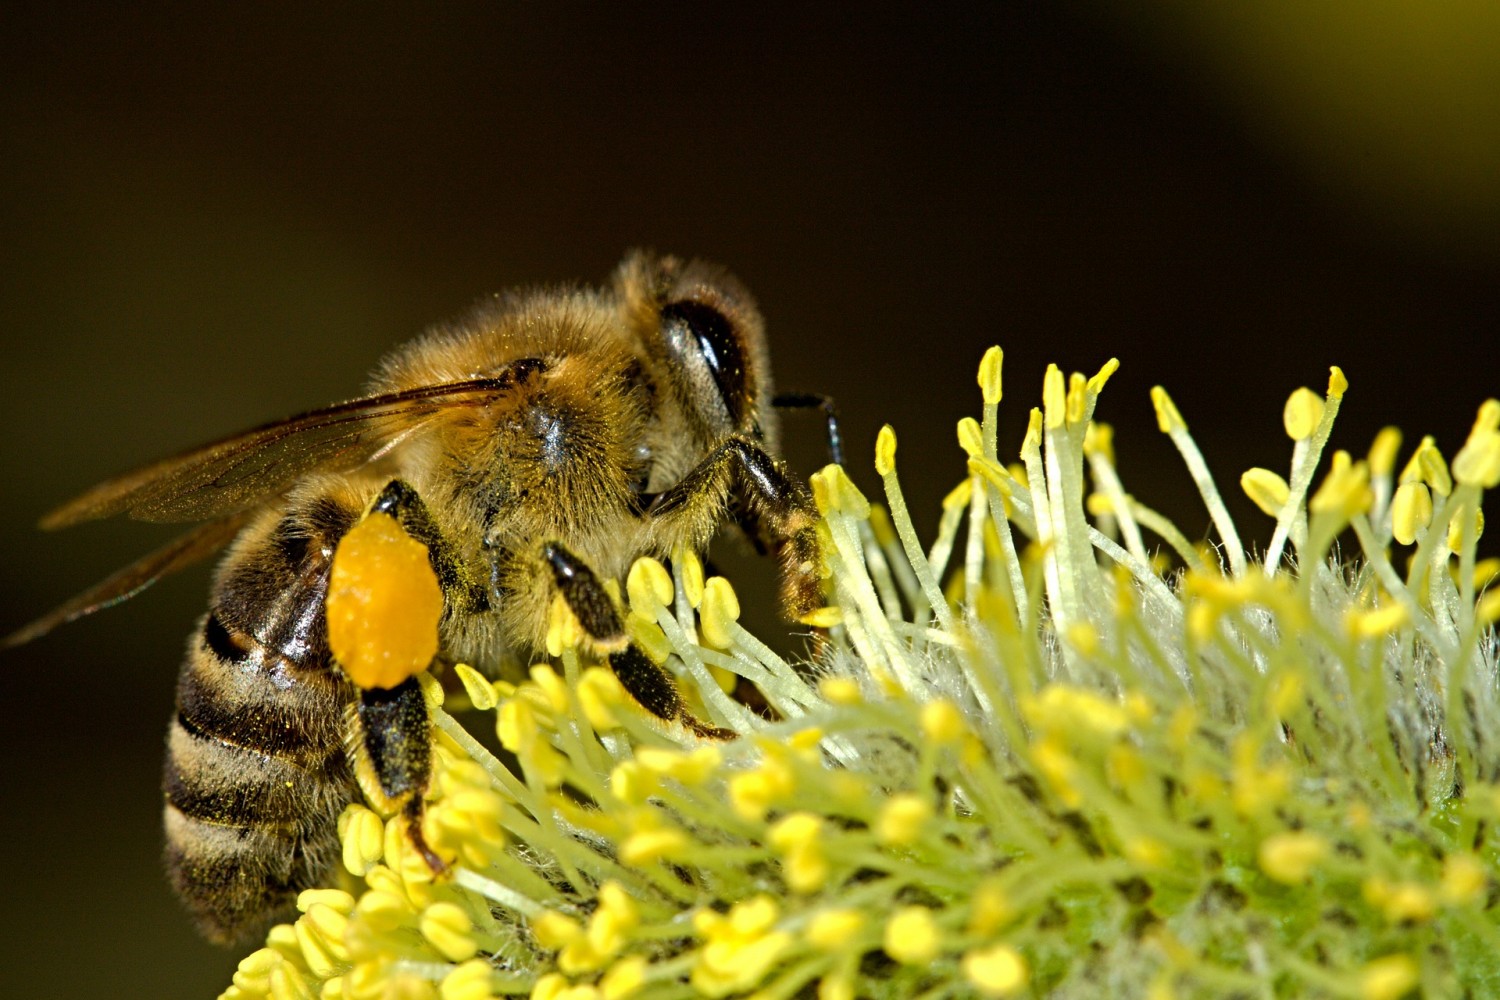 A méhek tömeges pusztulása mellett nem lehet szó nélkül elmenni